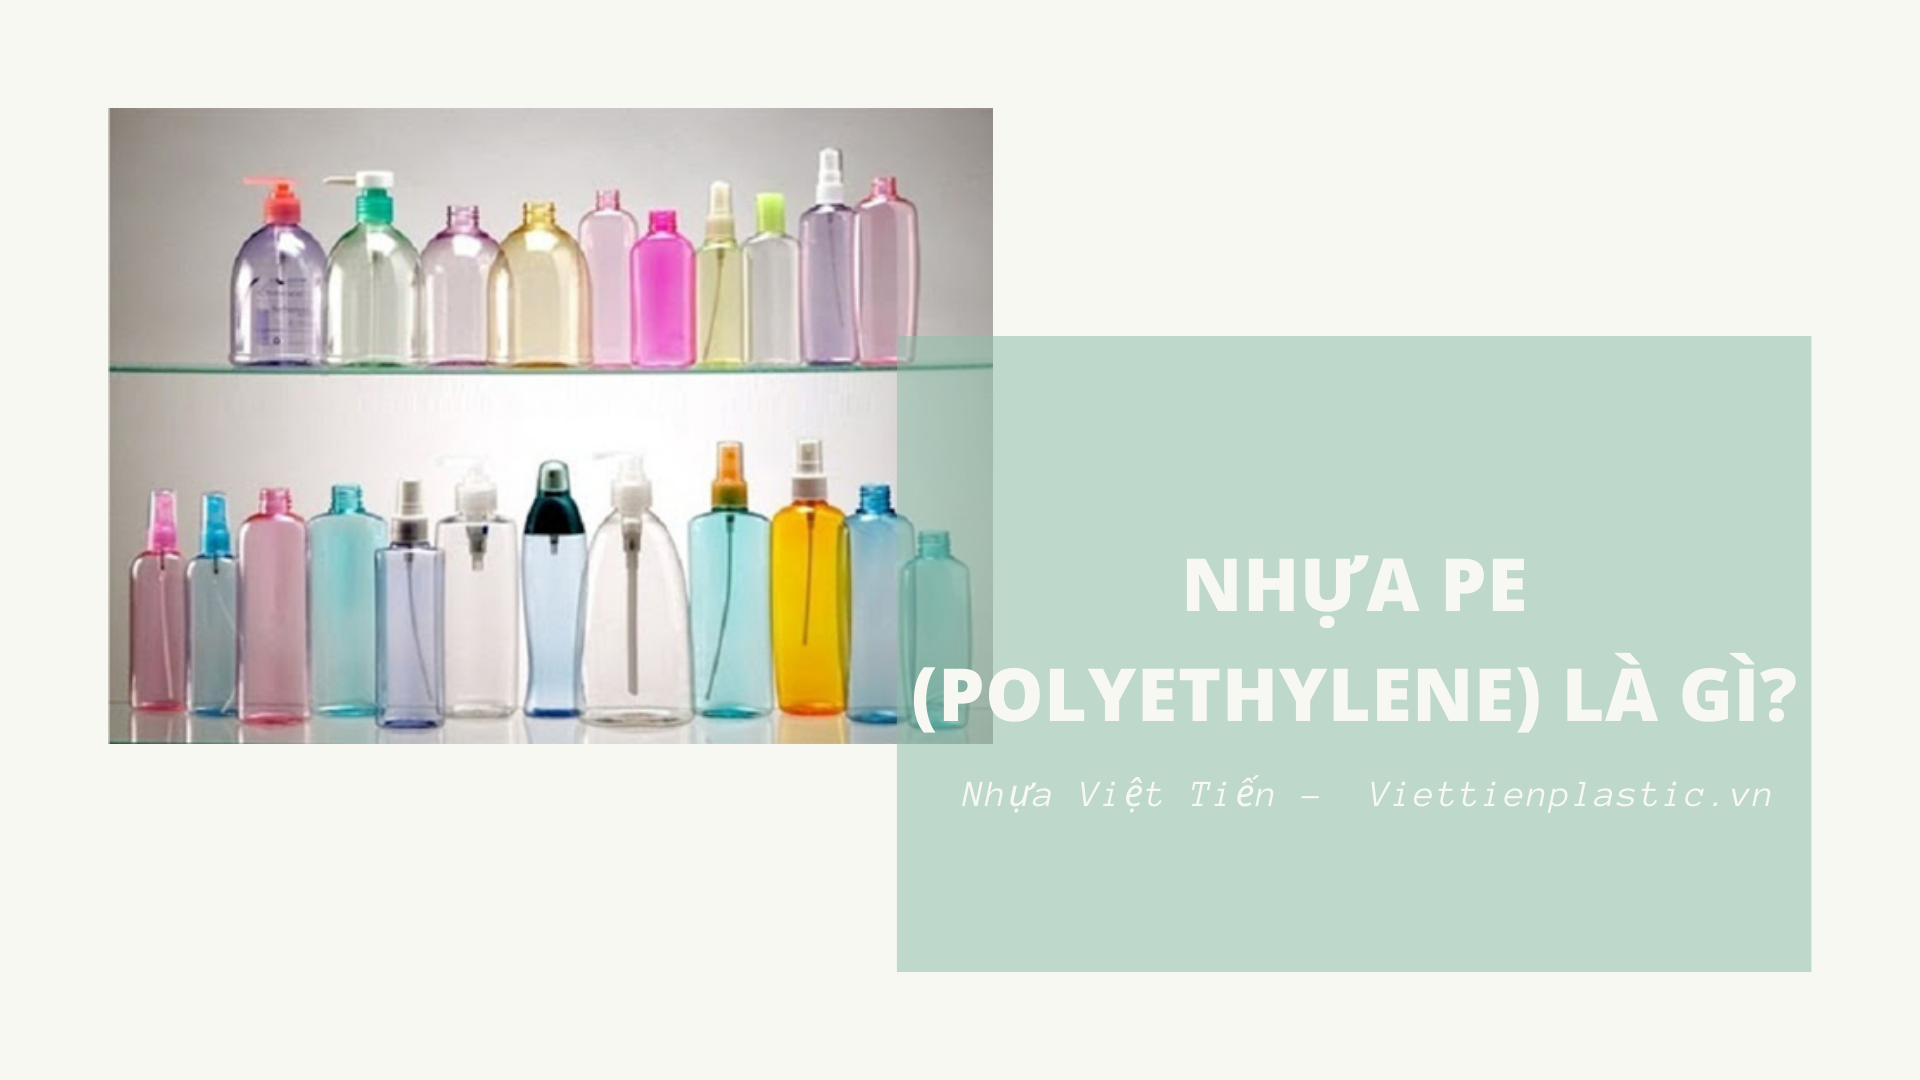 Nhựa PE (Polyethylene) là gì? Ứng dụng của Polyethylene để làm gì?